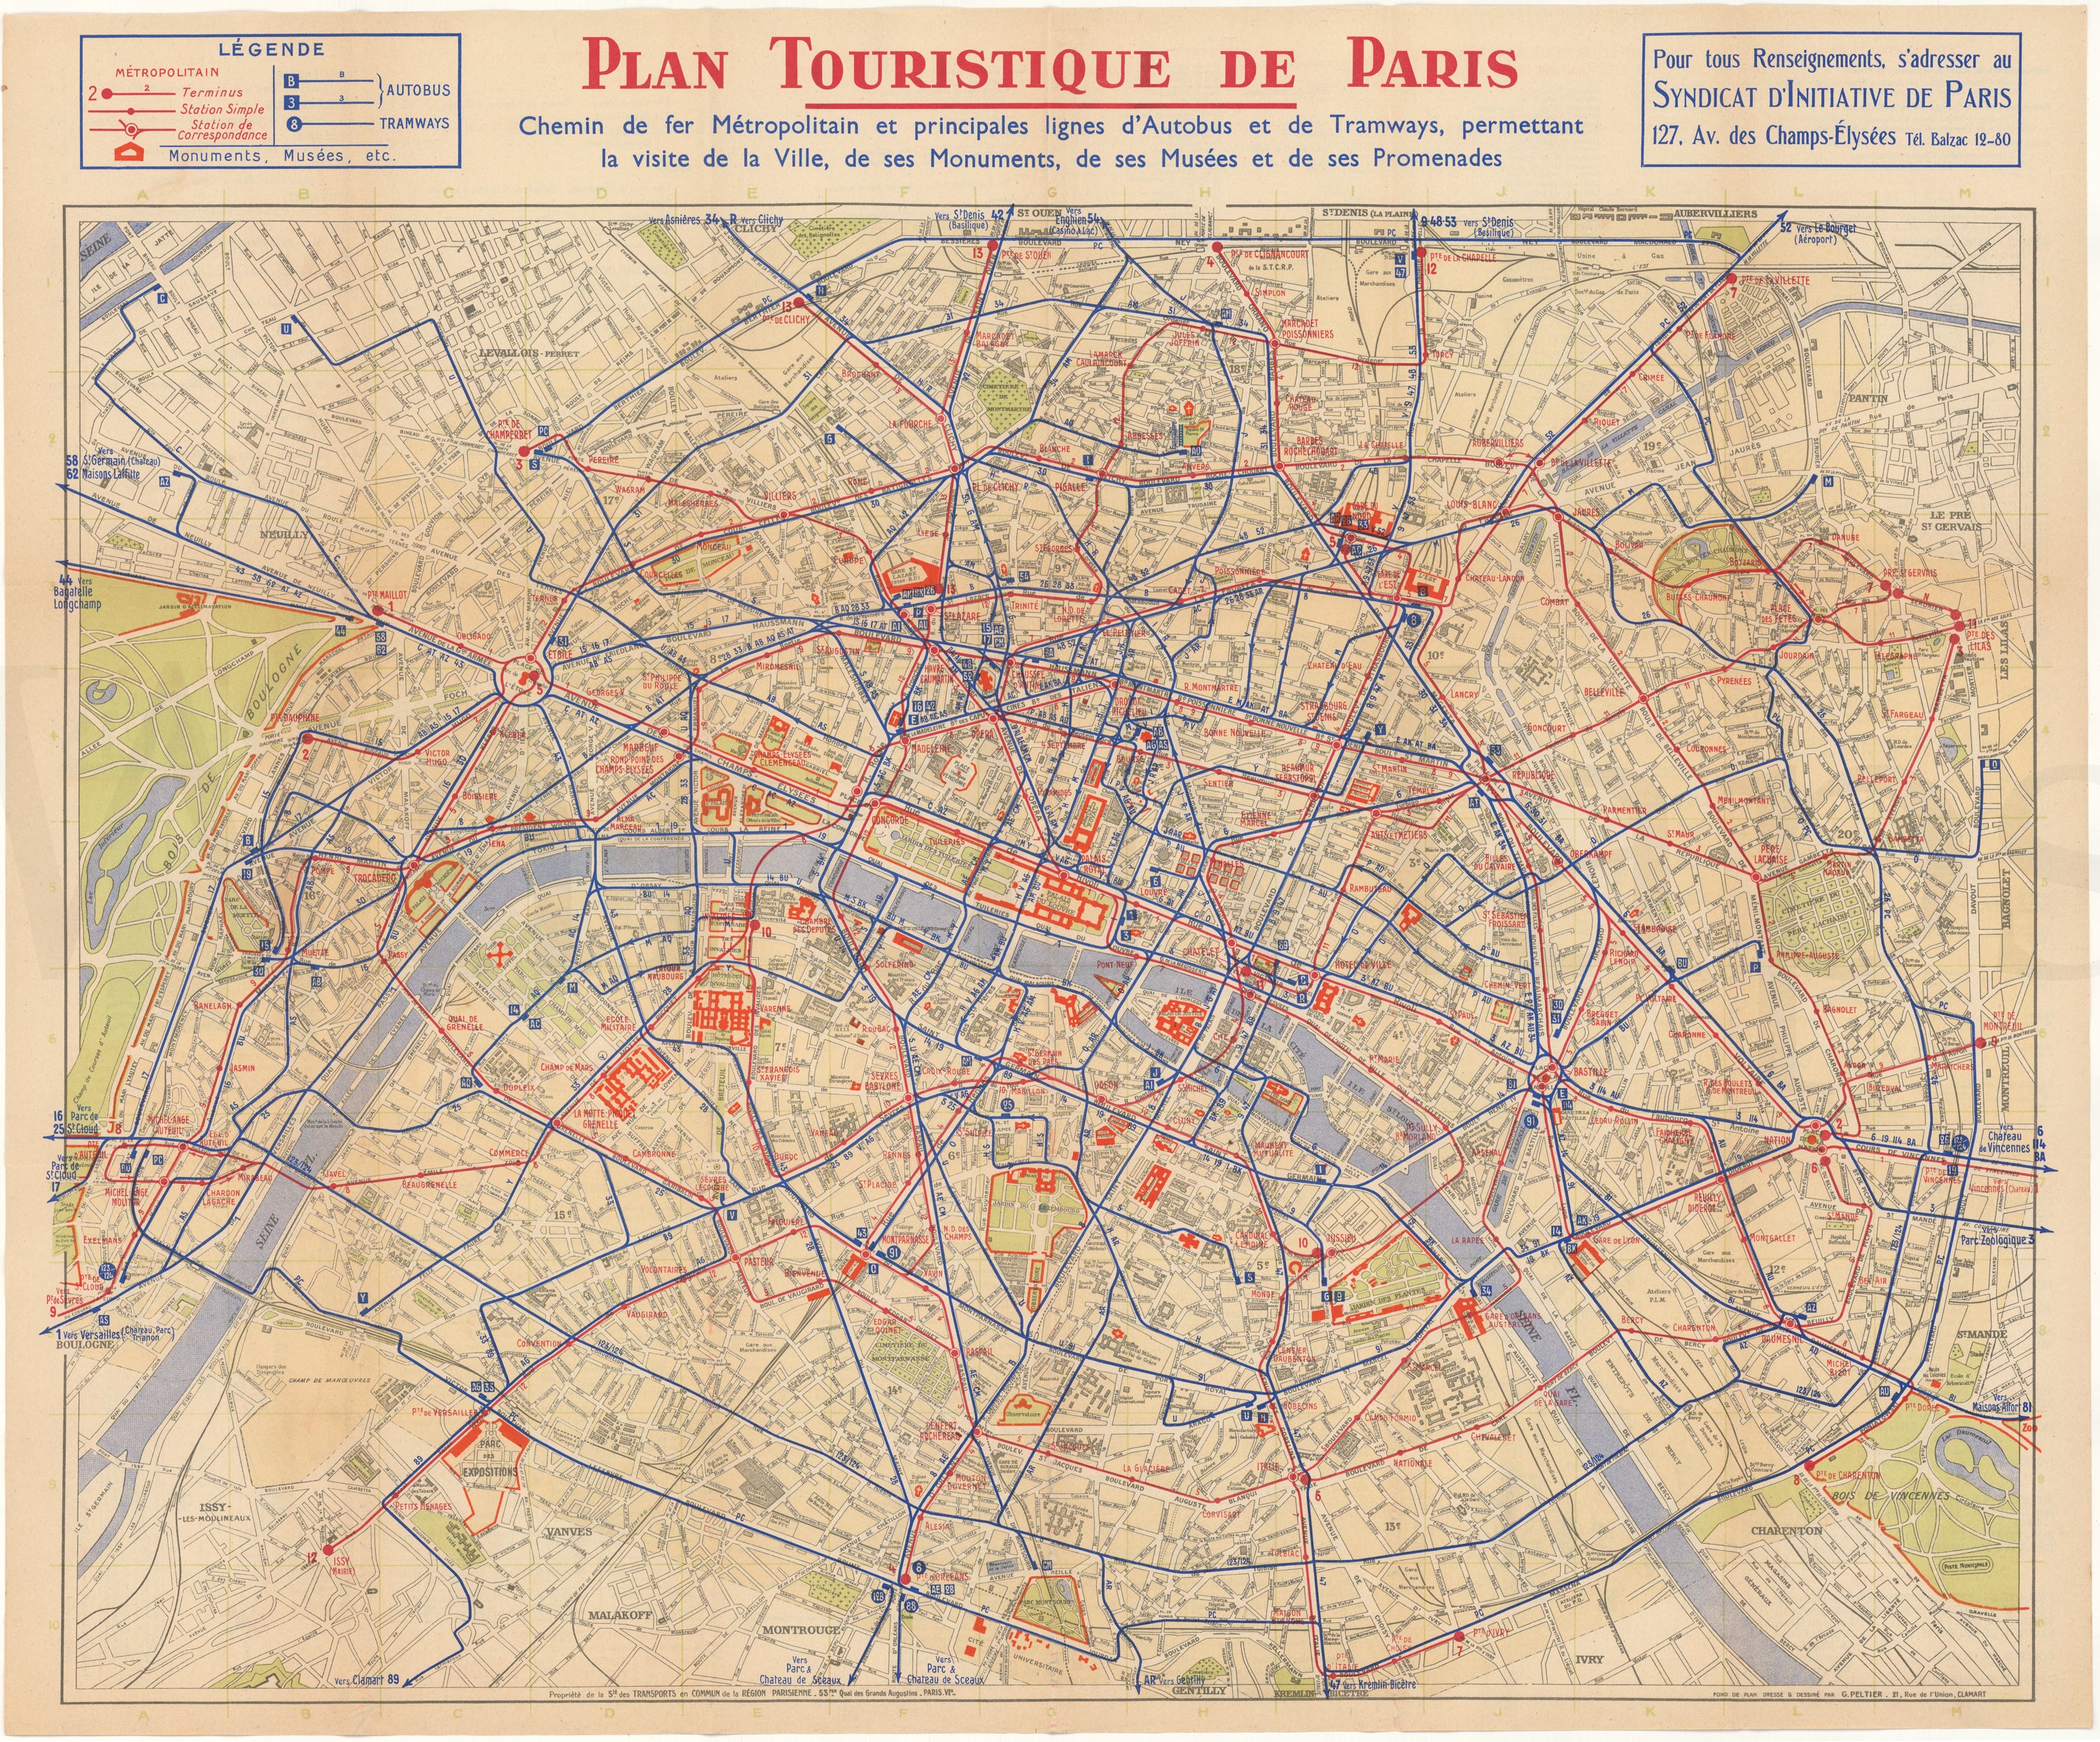 Paris, France "Touristique" Transit Map Circa 1930s: Metro, Bus, Tram